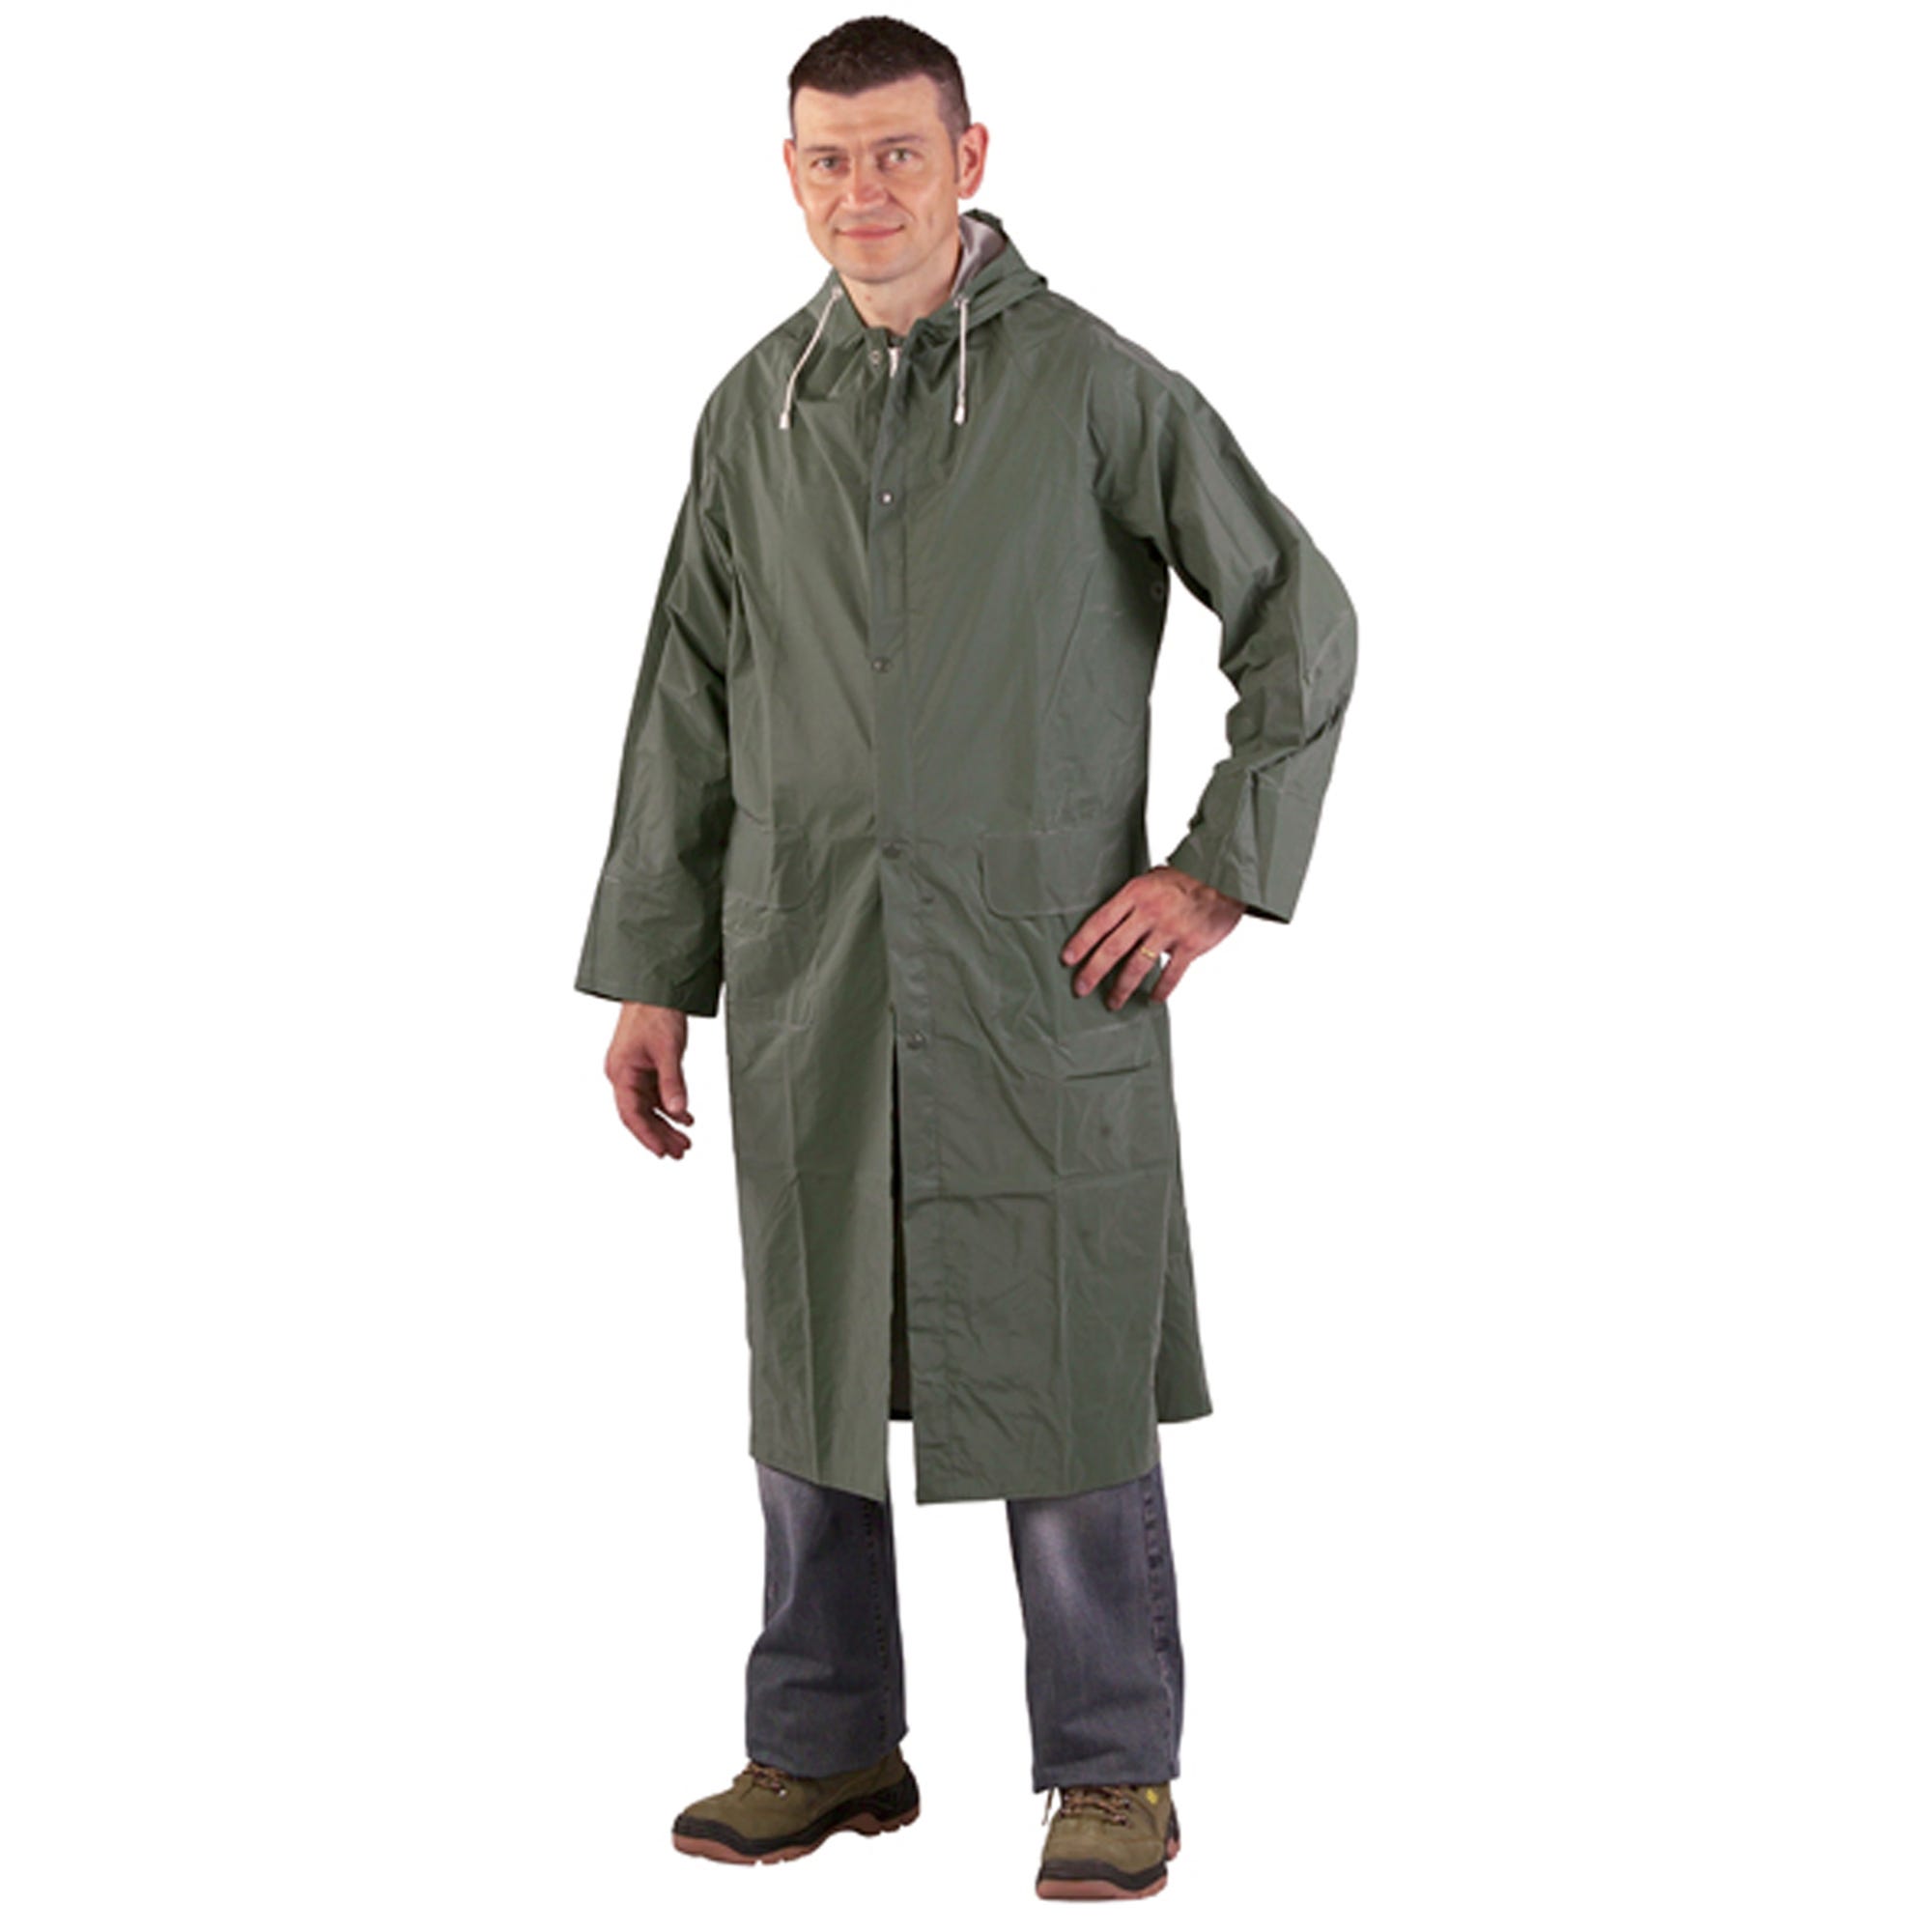 Manteau de pluie CO/PES, vert, 415g/m² - COVERGUARD - Taille 2XL 1